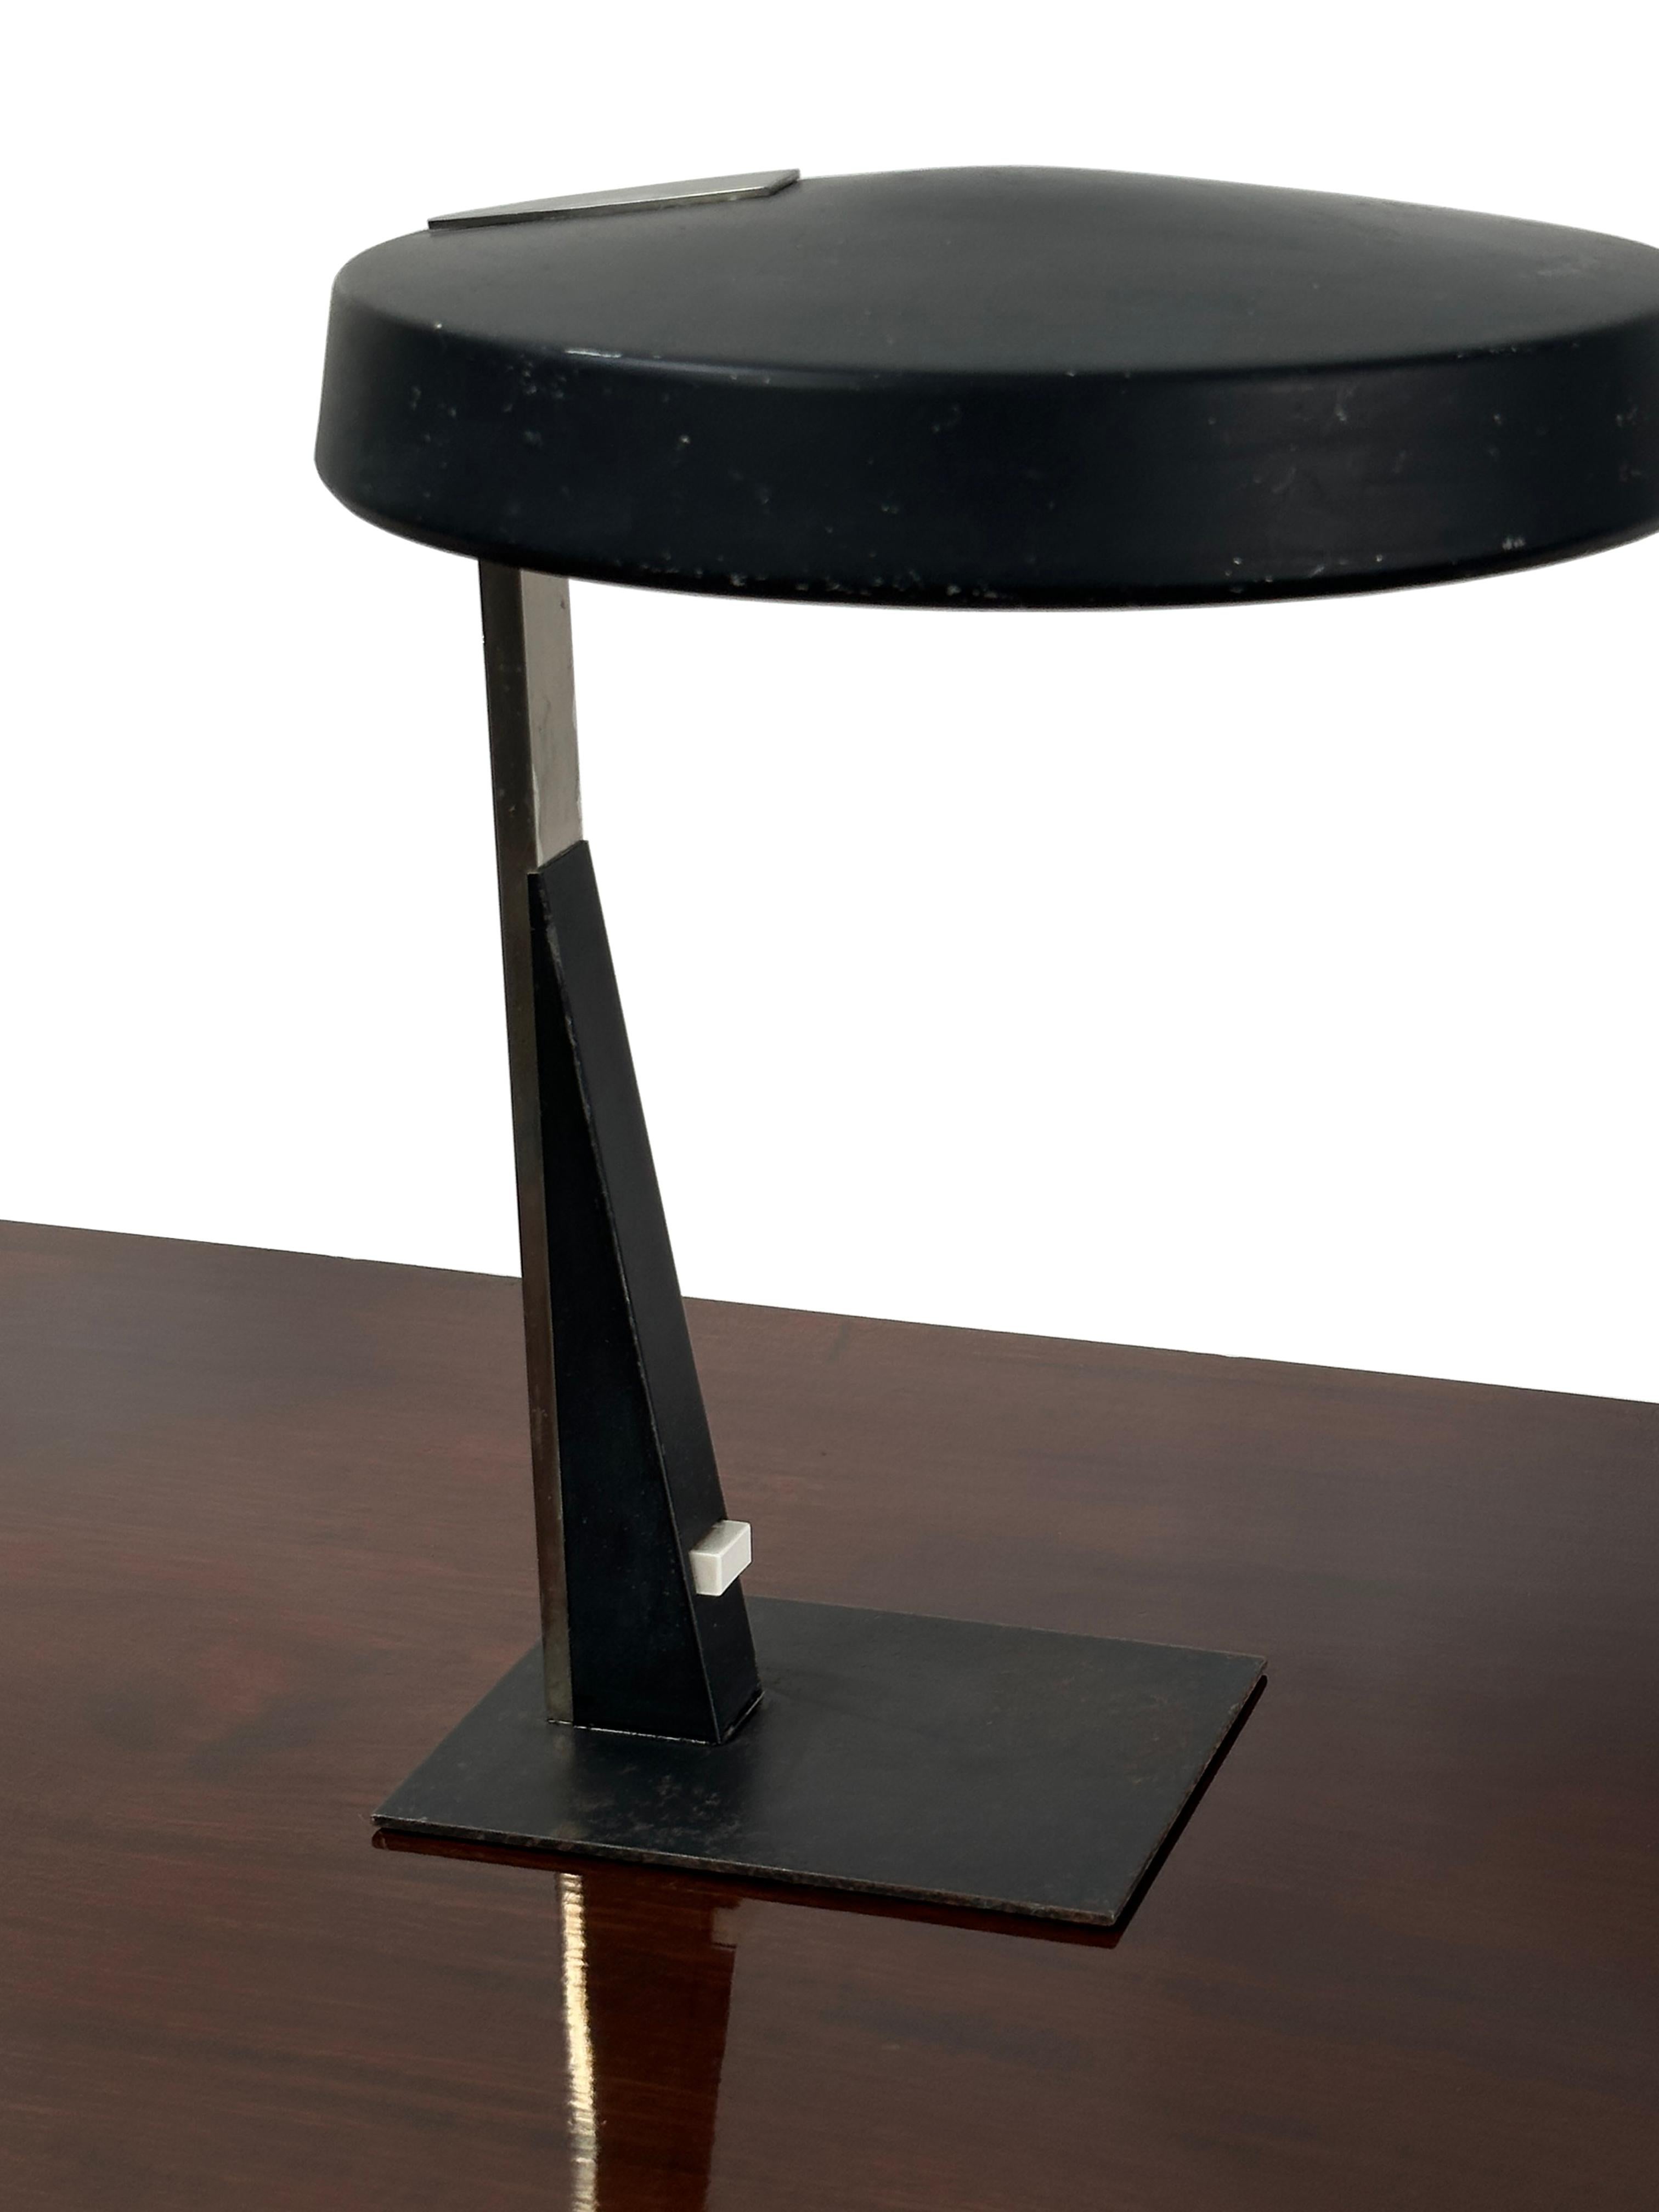 - Élégante lampe de bureau noire réglable, créée par le designer Louis Kalff pour Philips, Pays-Bas, vers 1950.
- Plaque d'interrupteur d'origine et position d'éclairage réglable via l'abat-jour, recâblage en flex noir tressé et testé PAT.
- La